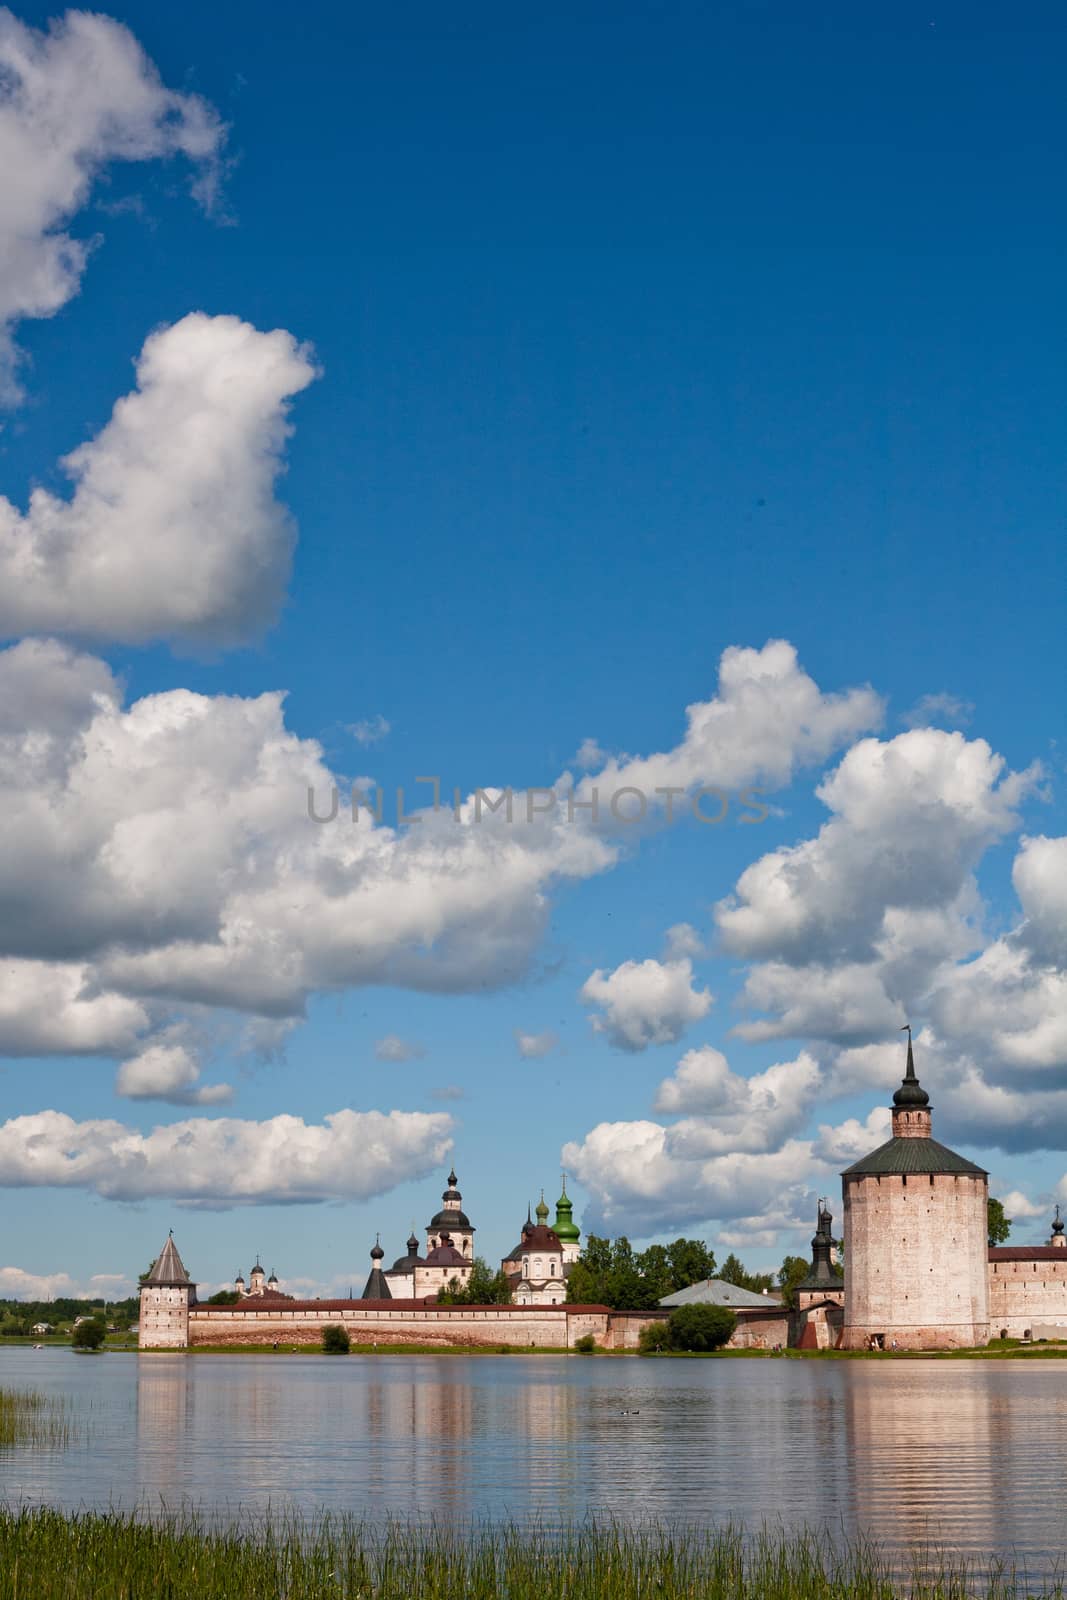 Kirillov abbey by foaloce